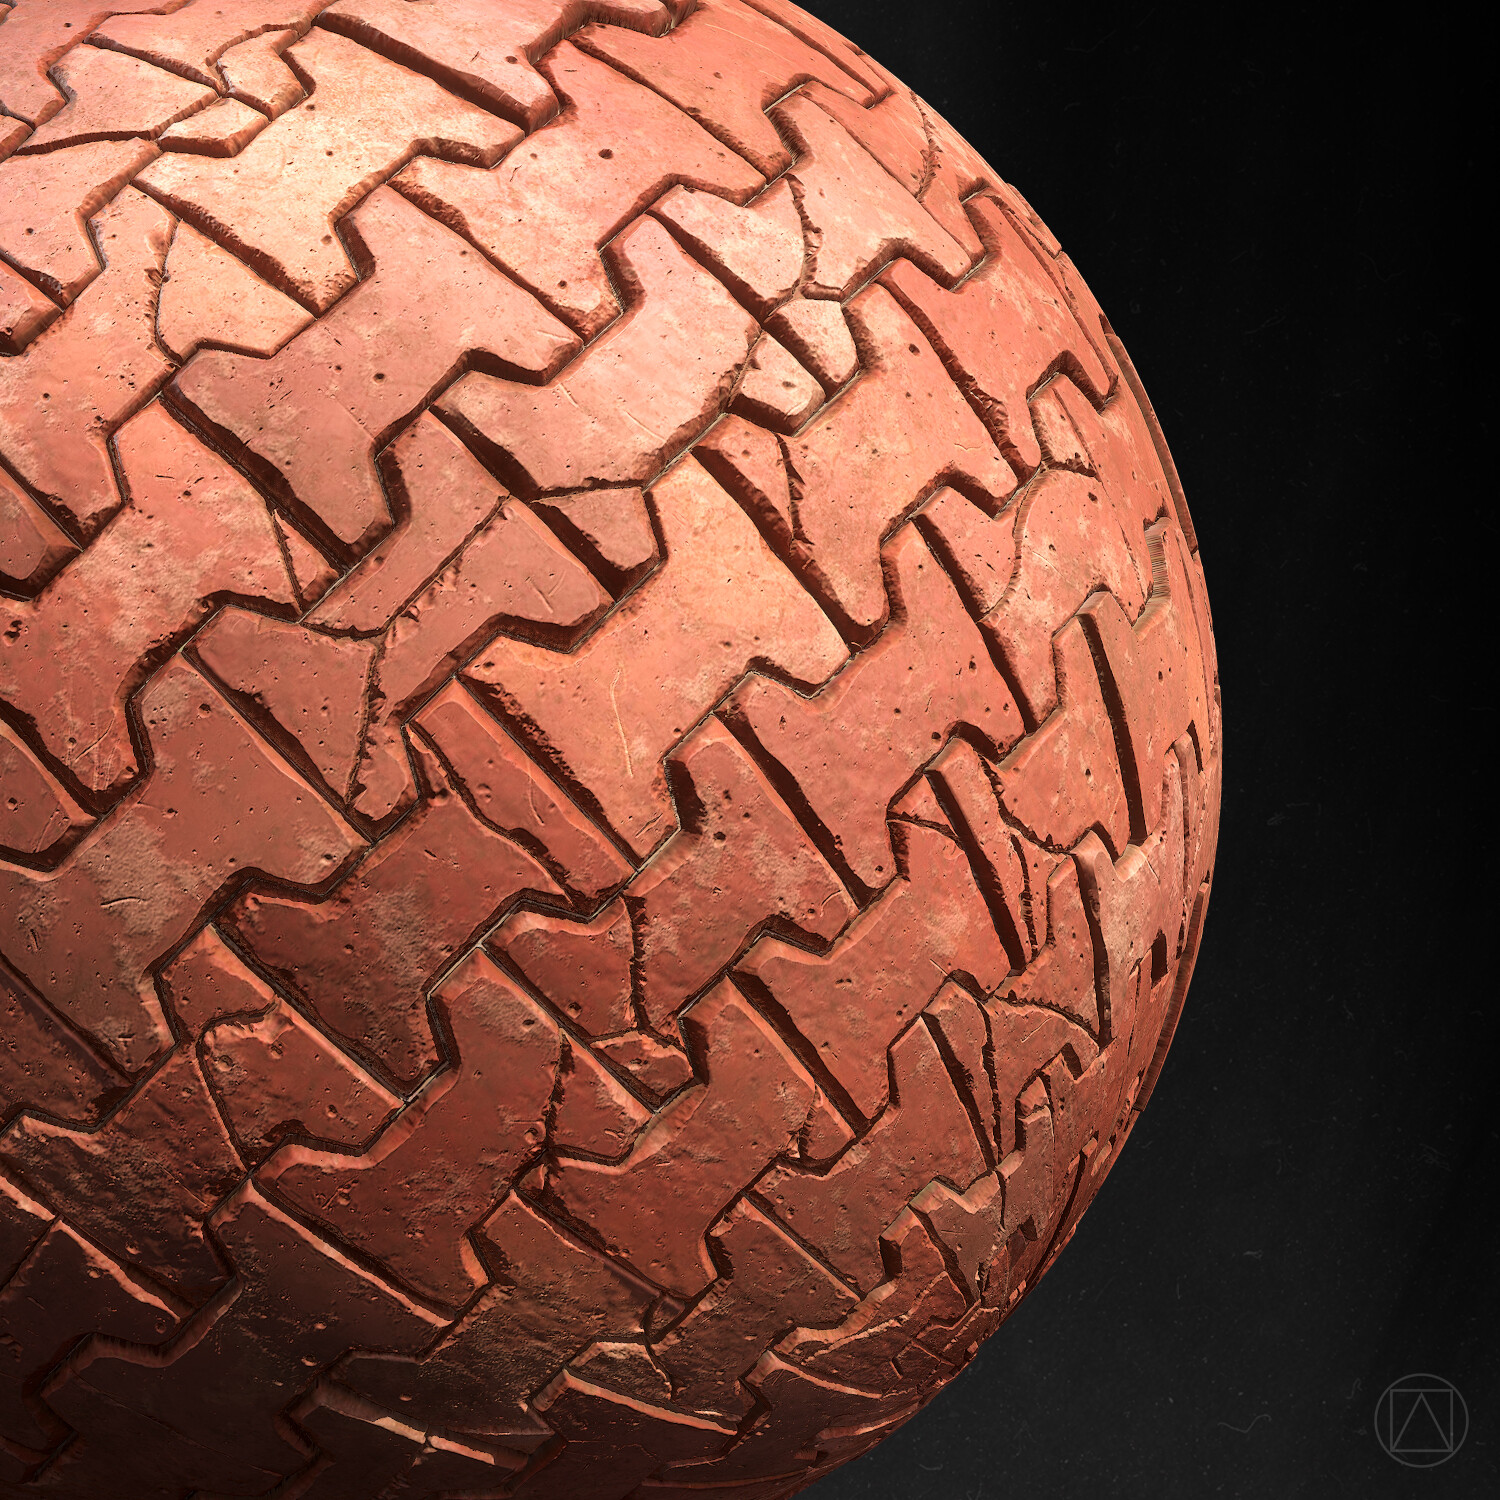 Sphere detail.